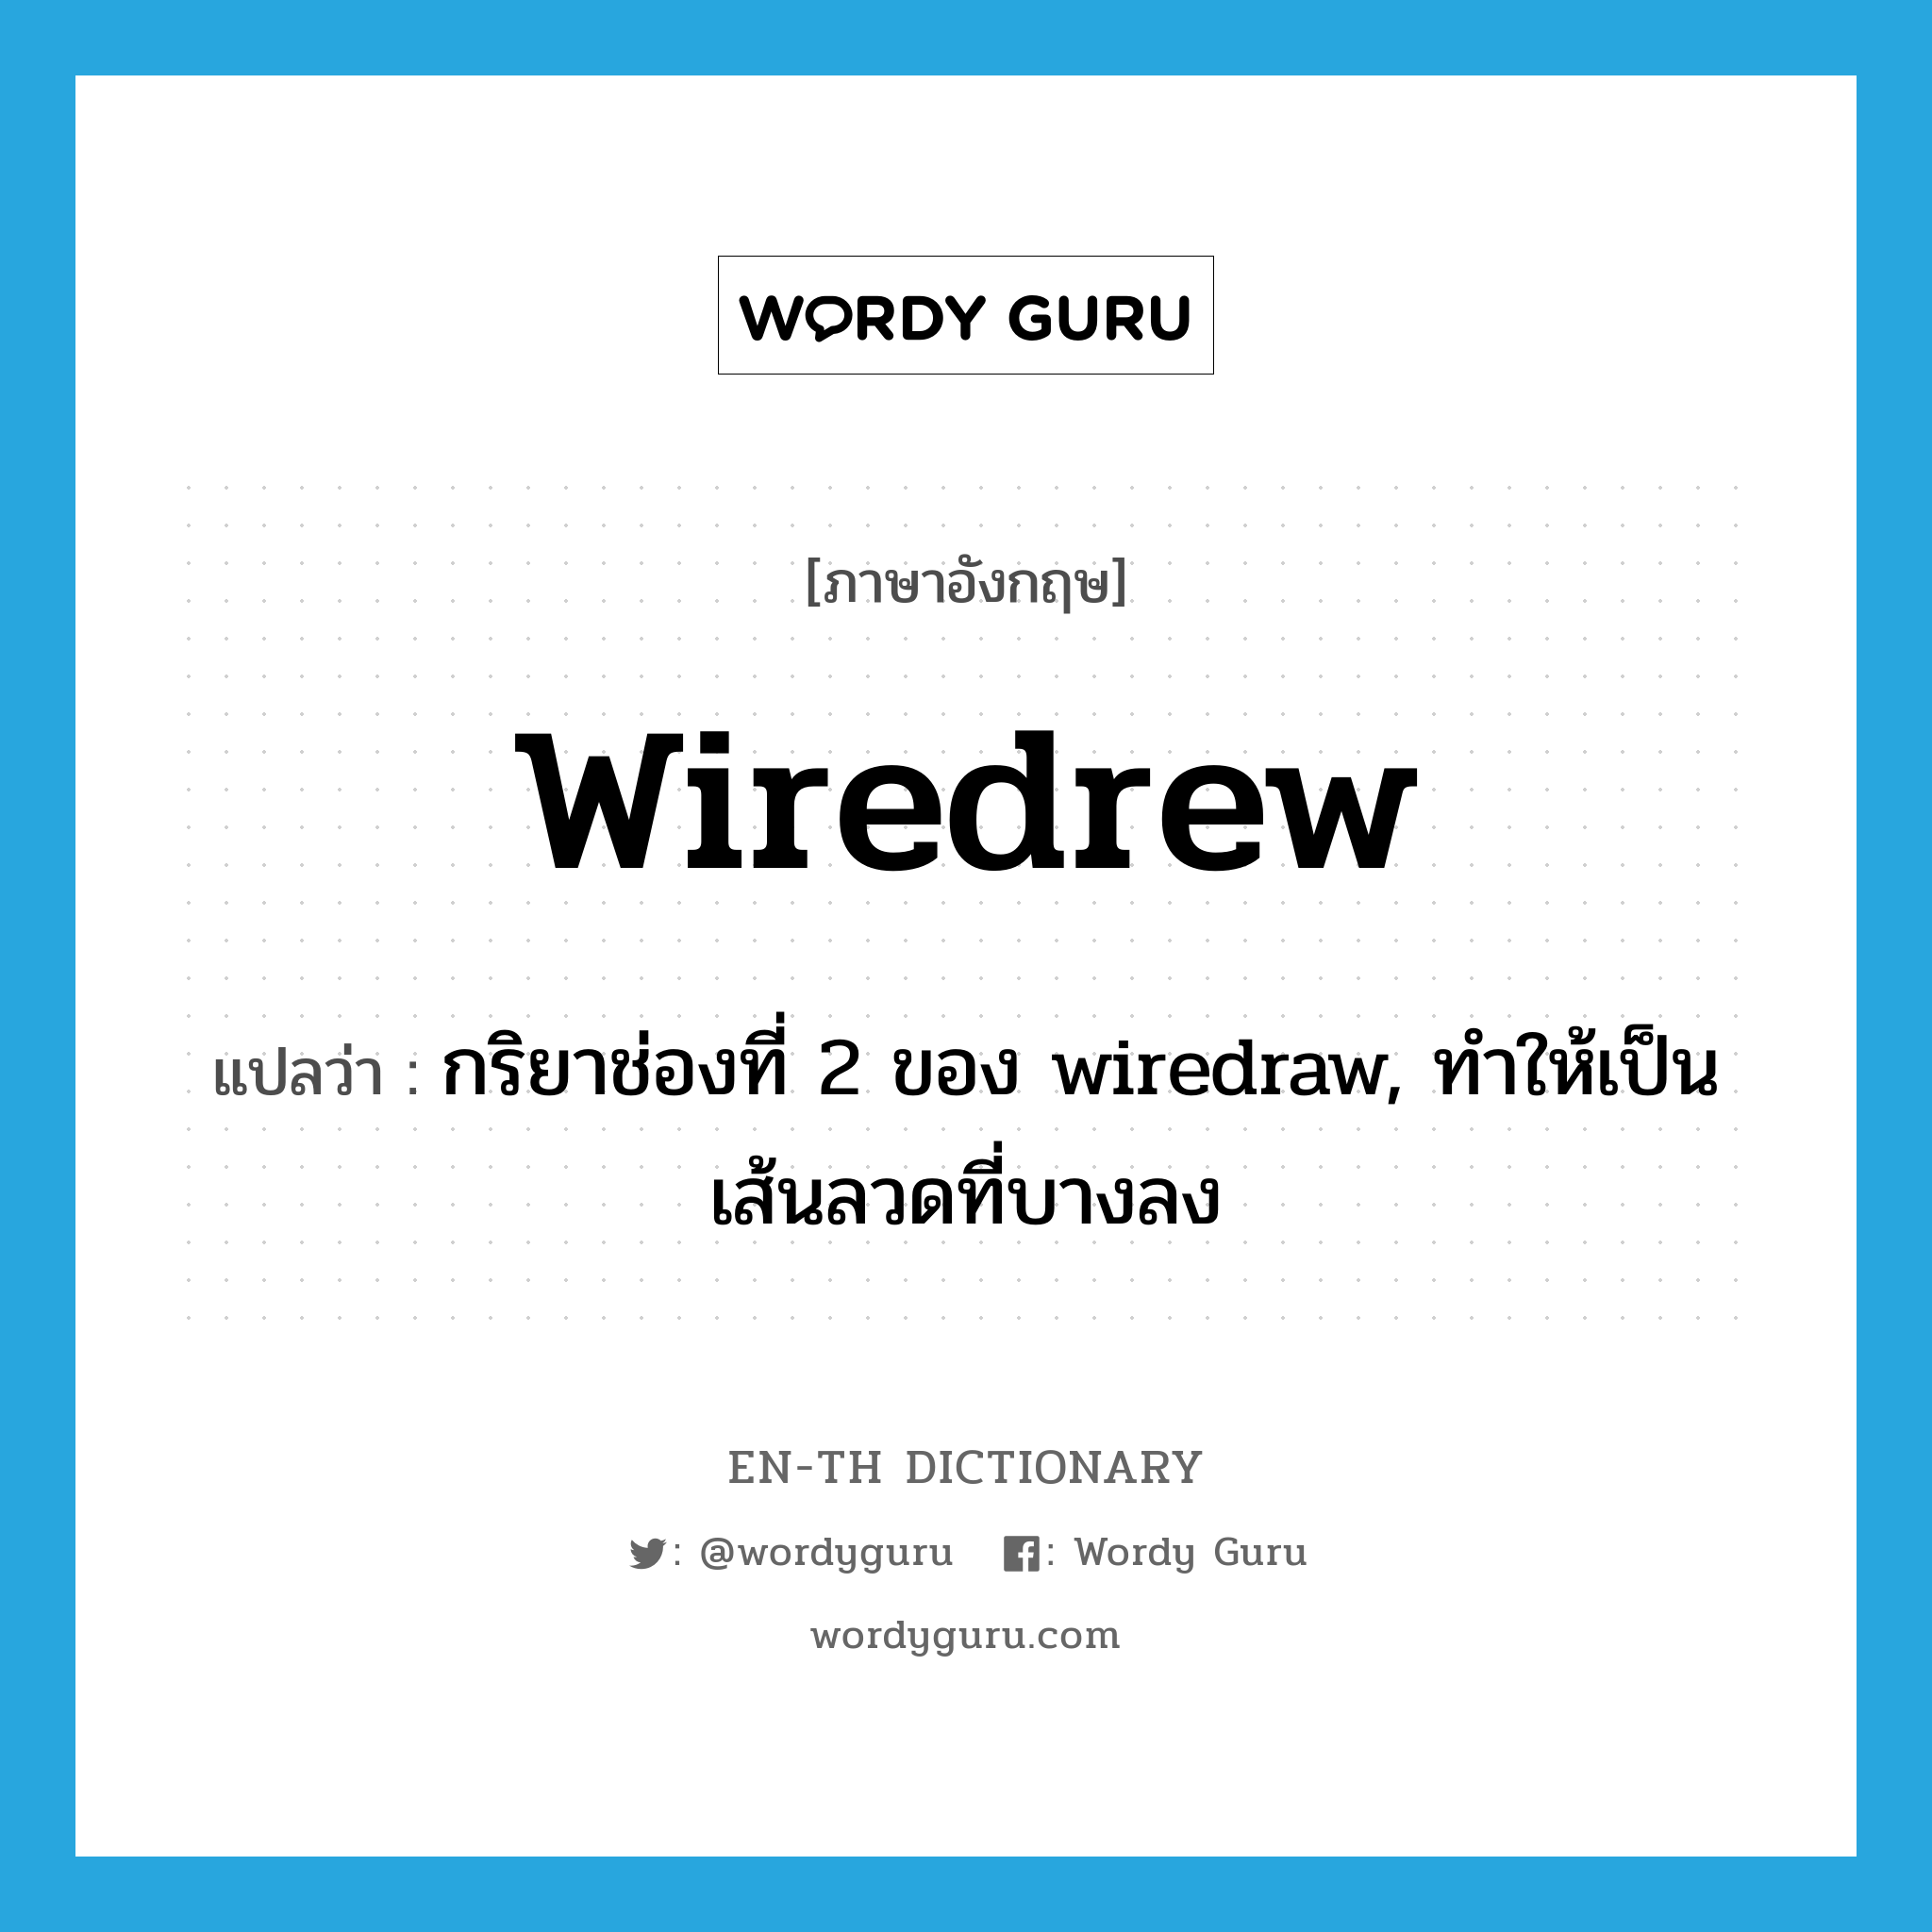 กริยาช่องที่ 2 ของ wiredraw, ทำให้เป็นเส้นลวดที่บางลง ภาษาอังกฤษ?, คำศัพท์ภาษาอังกฤษ กริยาช่องที่ 2 ของ wiredraw, ทำให้เป็นเส้นลวดที่บางลง แปลว่า wiredrew ประเภท VT หมวด VT